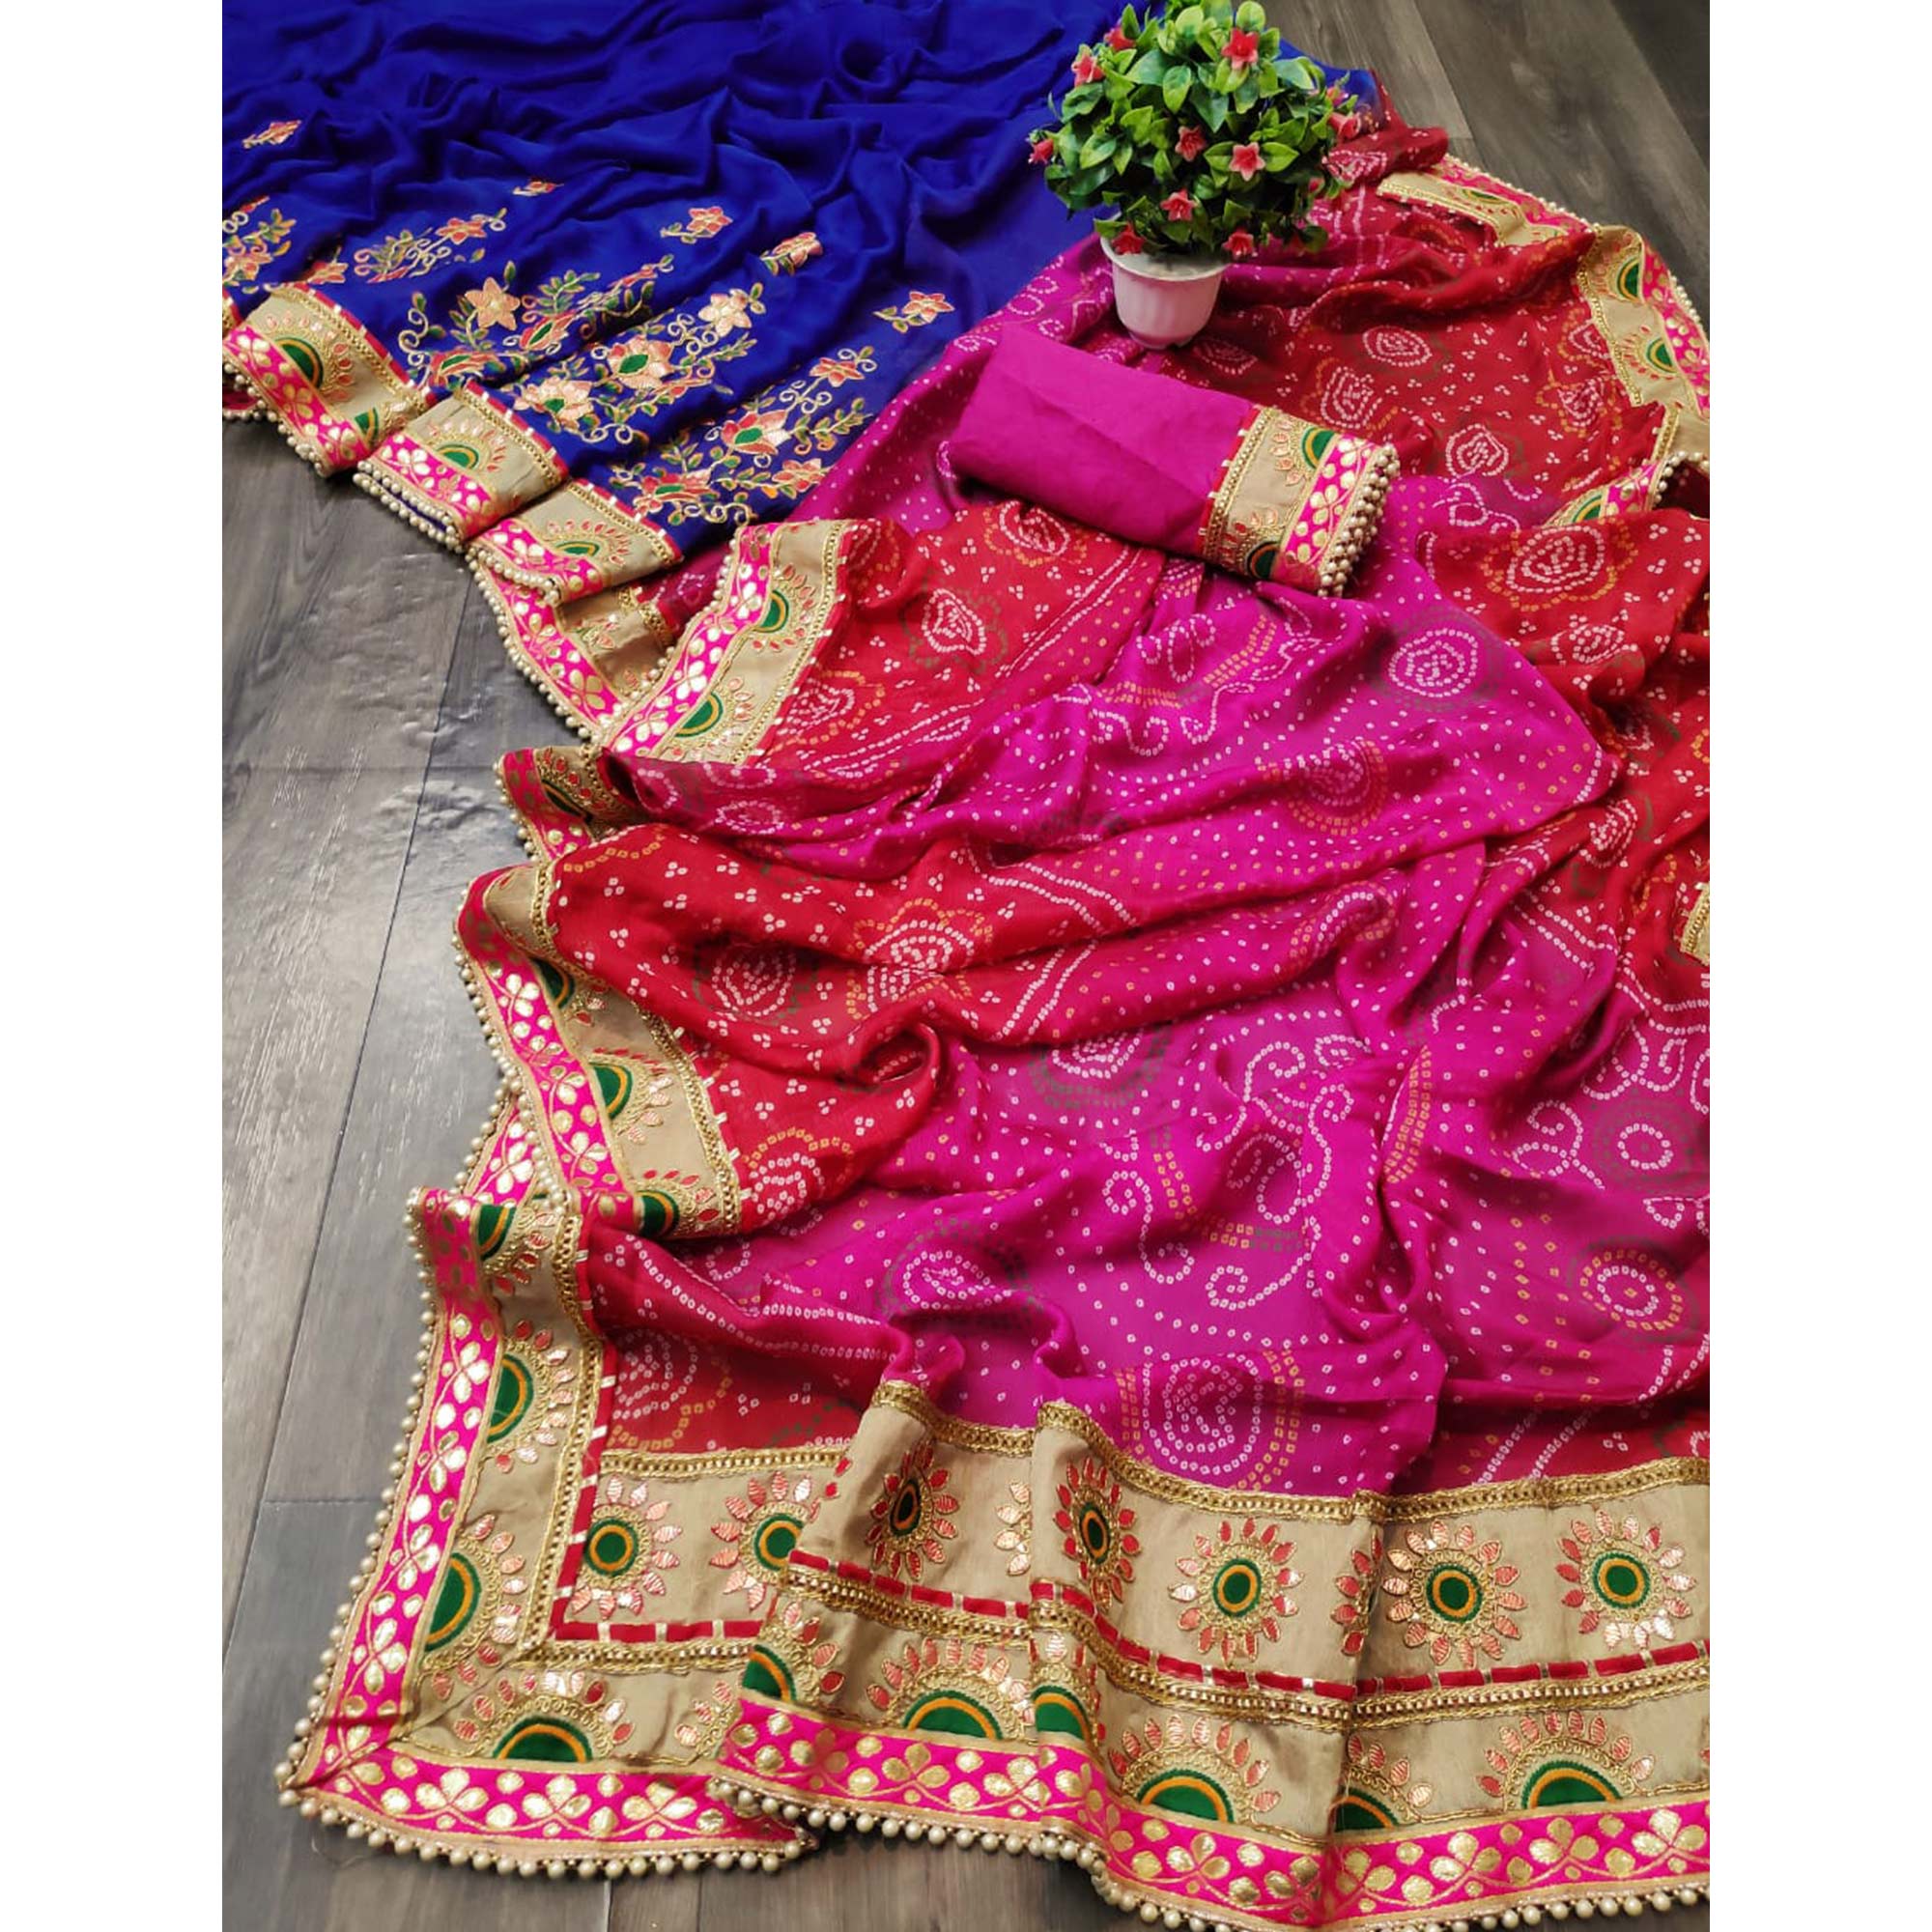 Blue & Pink Bandhani Printed Chiffon Half & Half Saree